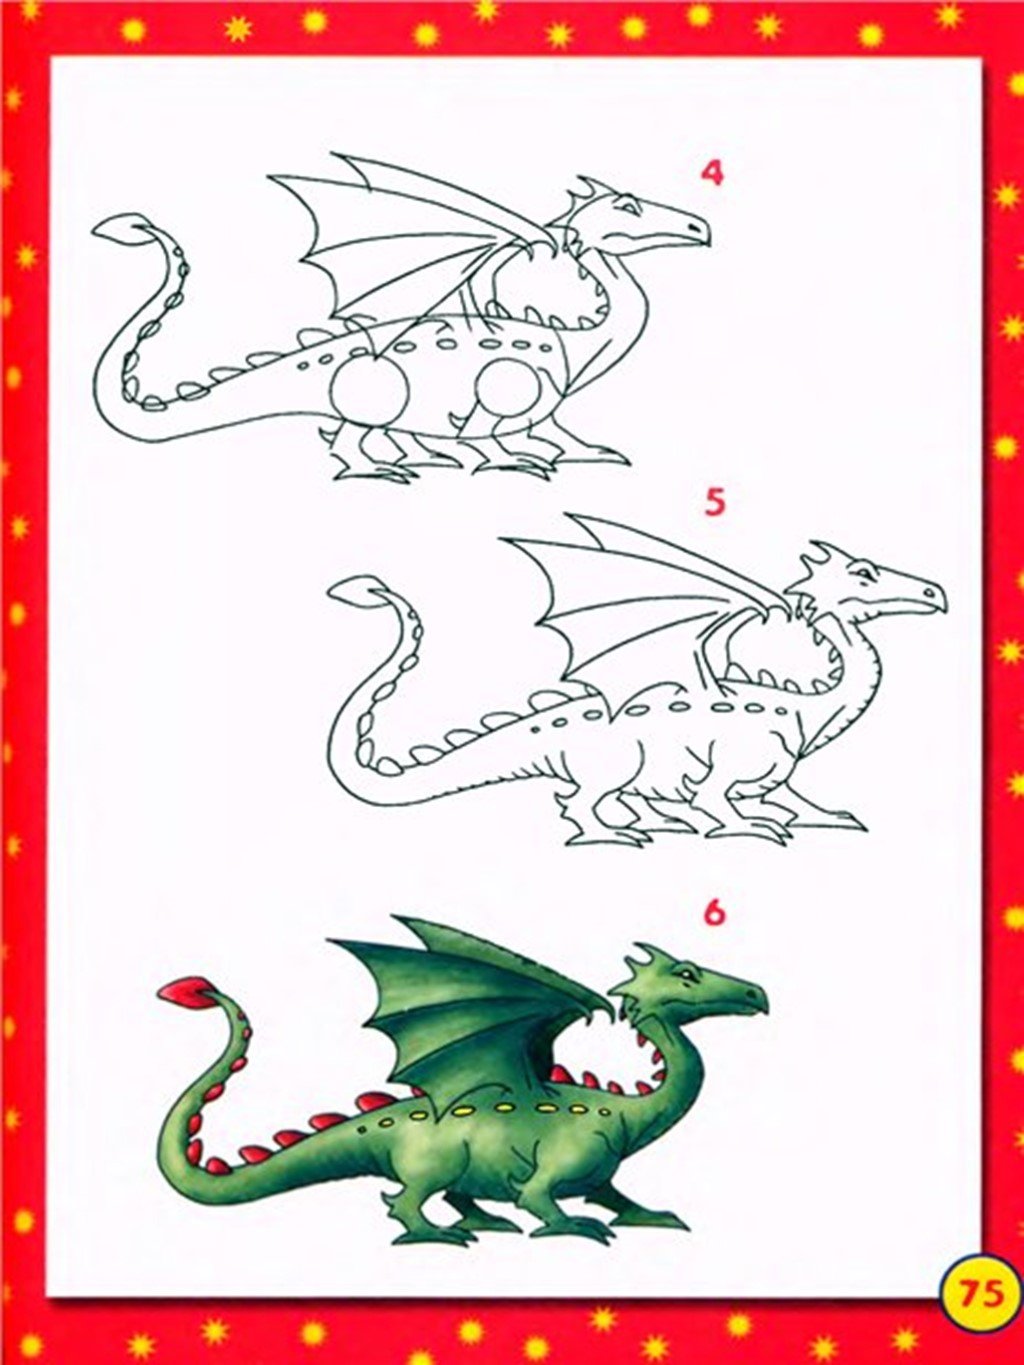 Как нарисовать дракона для детей. Дракон для рисования для детей. Нарисовать дракона. Поэтапное рисование дракона для детей. Пошаговое рисование дракона для детей.